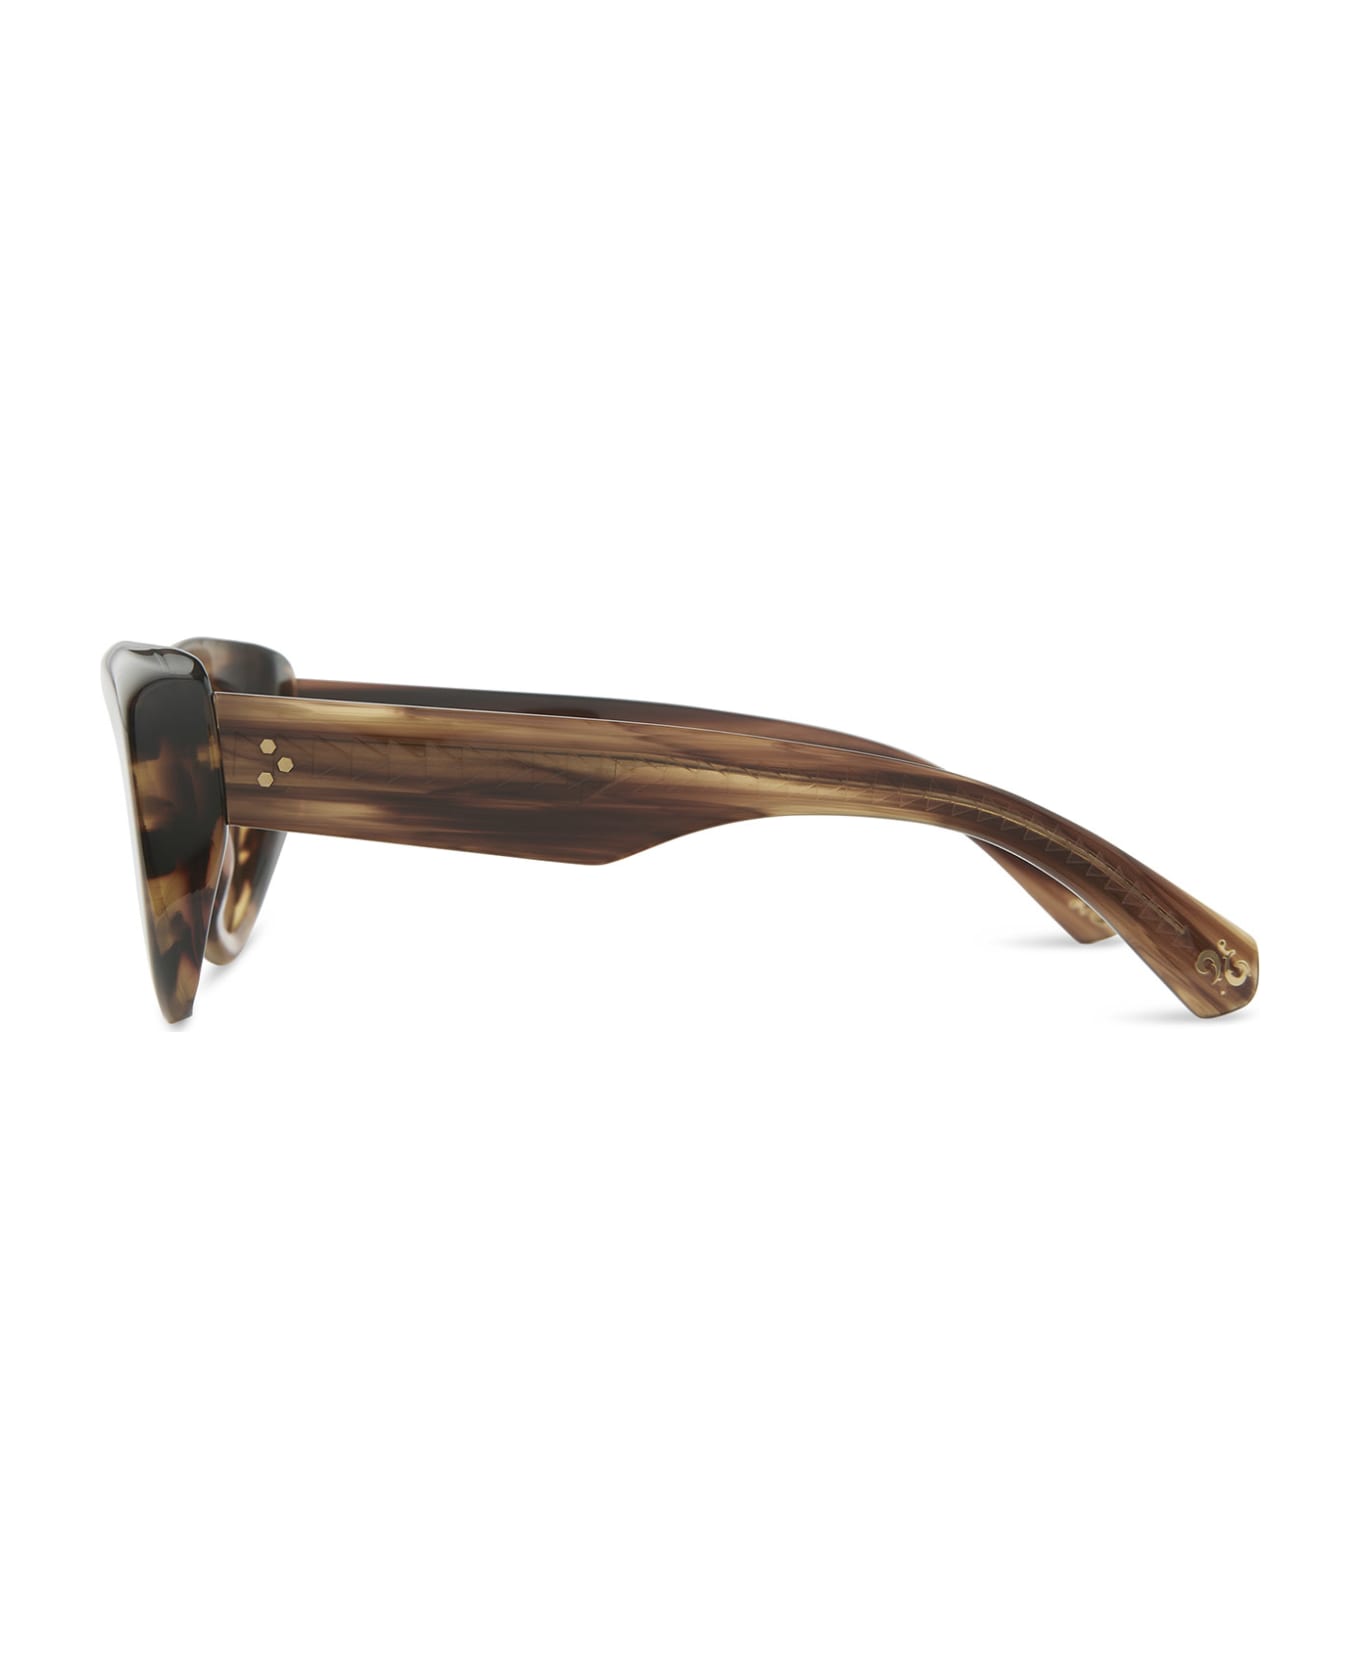 Mr. Leight Reveler S Koa-antique Gold Sunglasses - Koa-Antique Gold サングラス